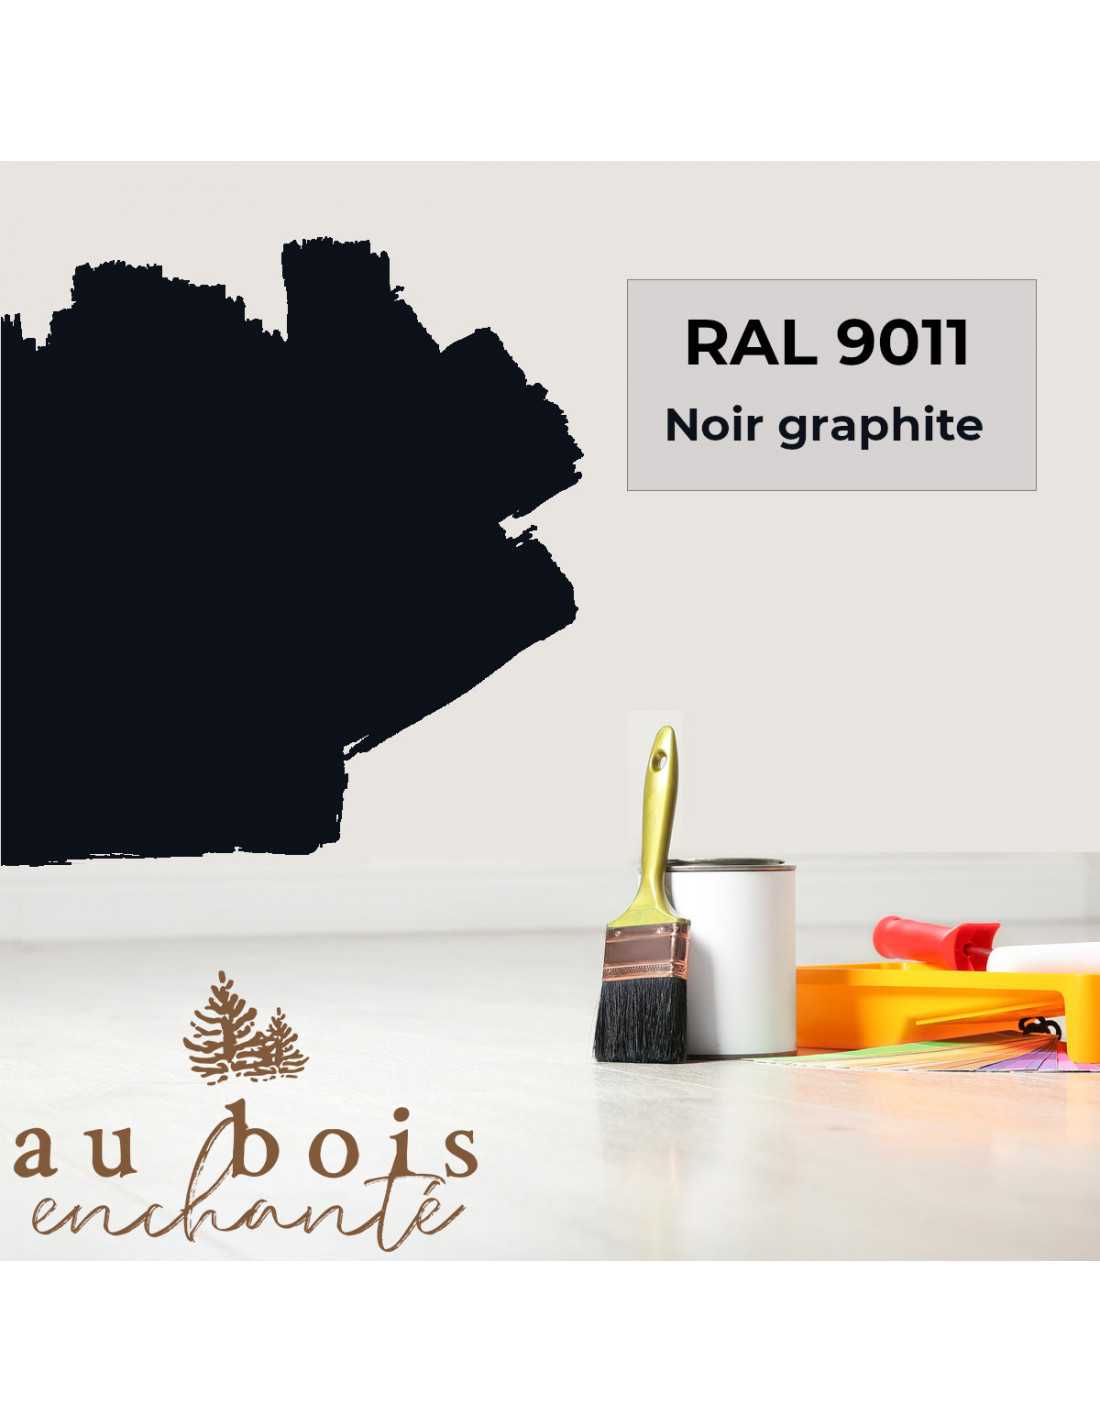 Peinture norme jouet Noir graphite RAL 9011